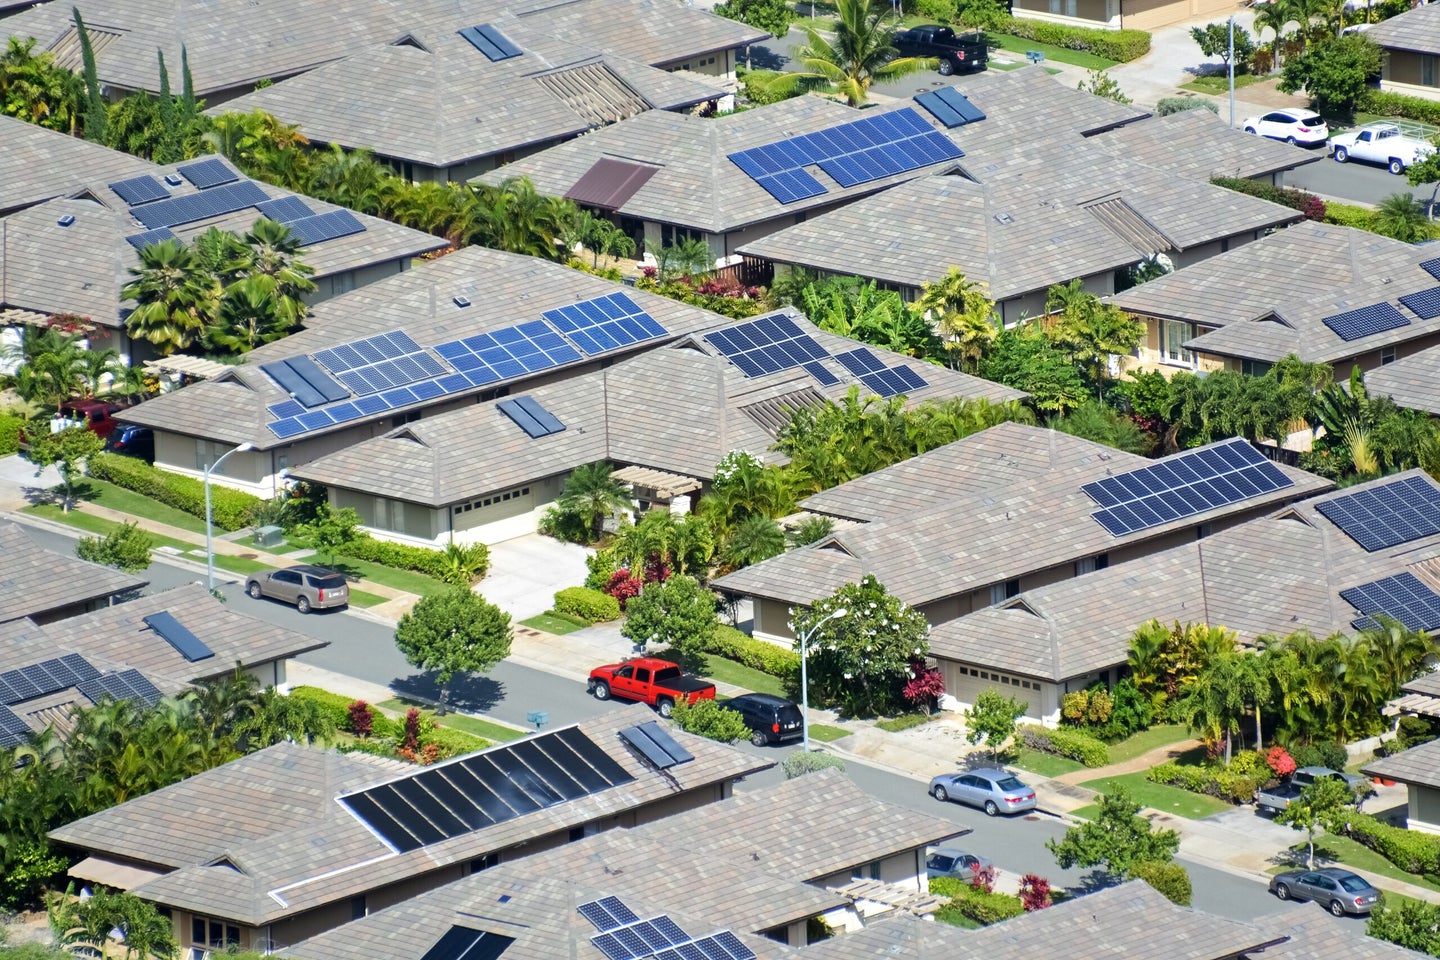 Rooftop solar panels in Koko Head, Oahu, Hawaii.